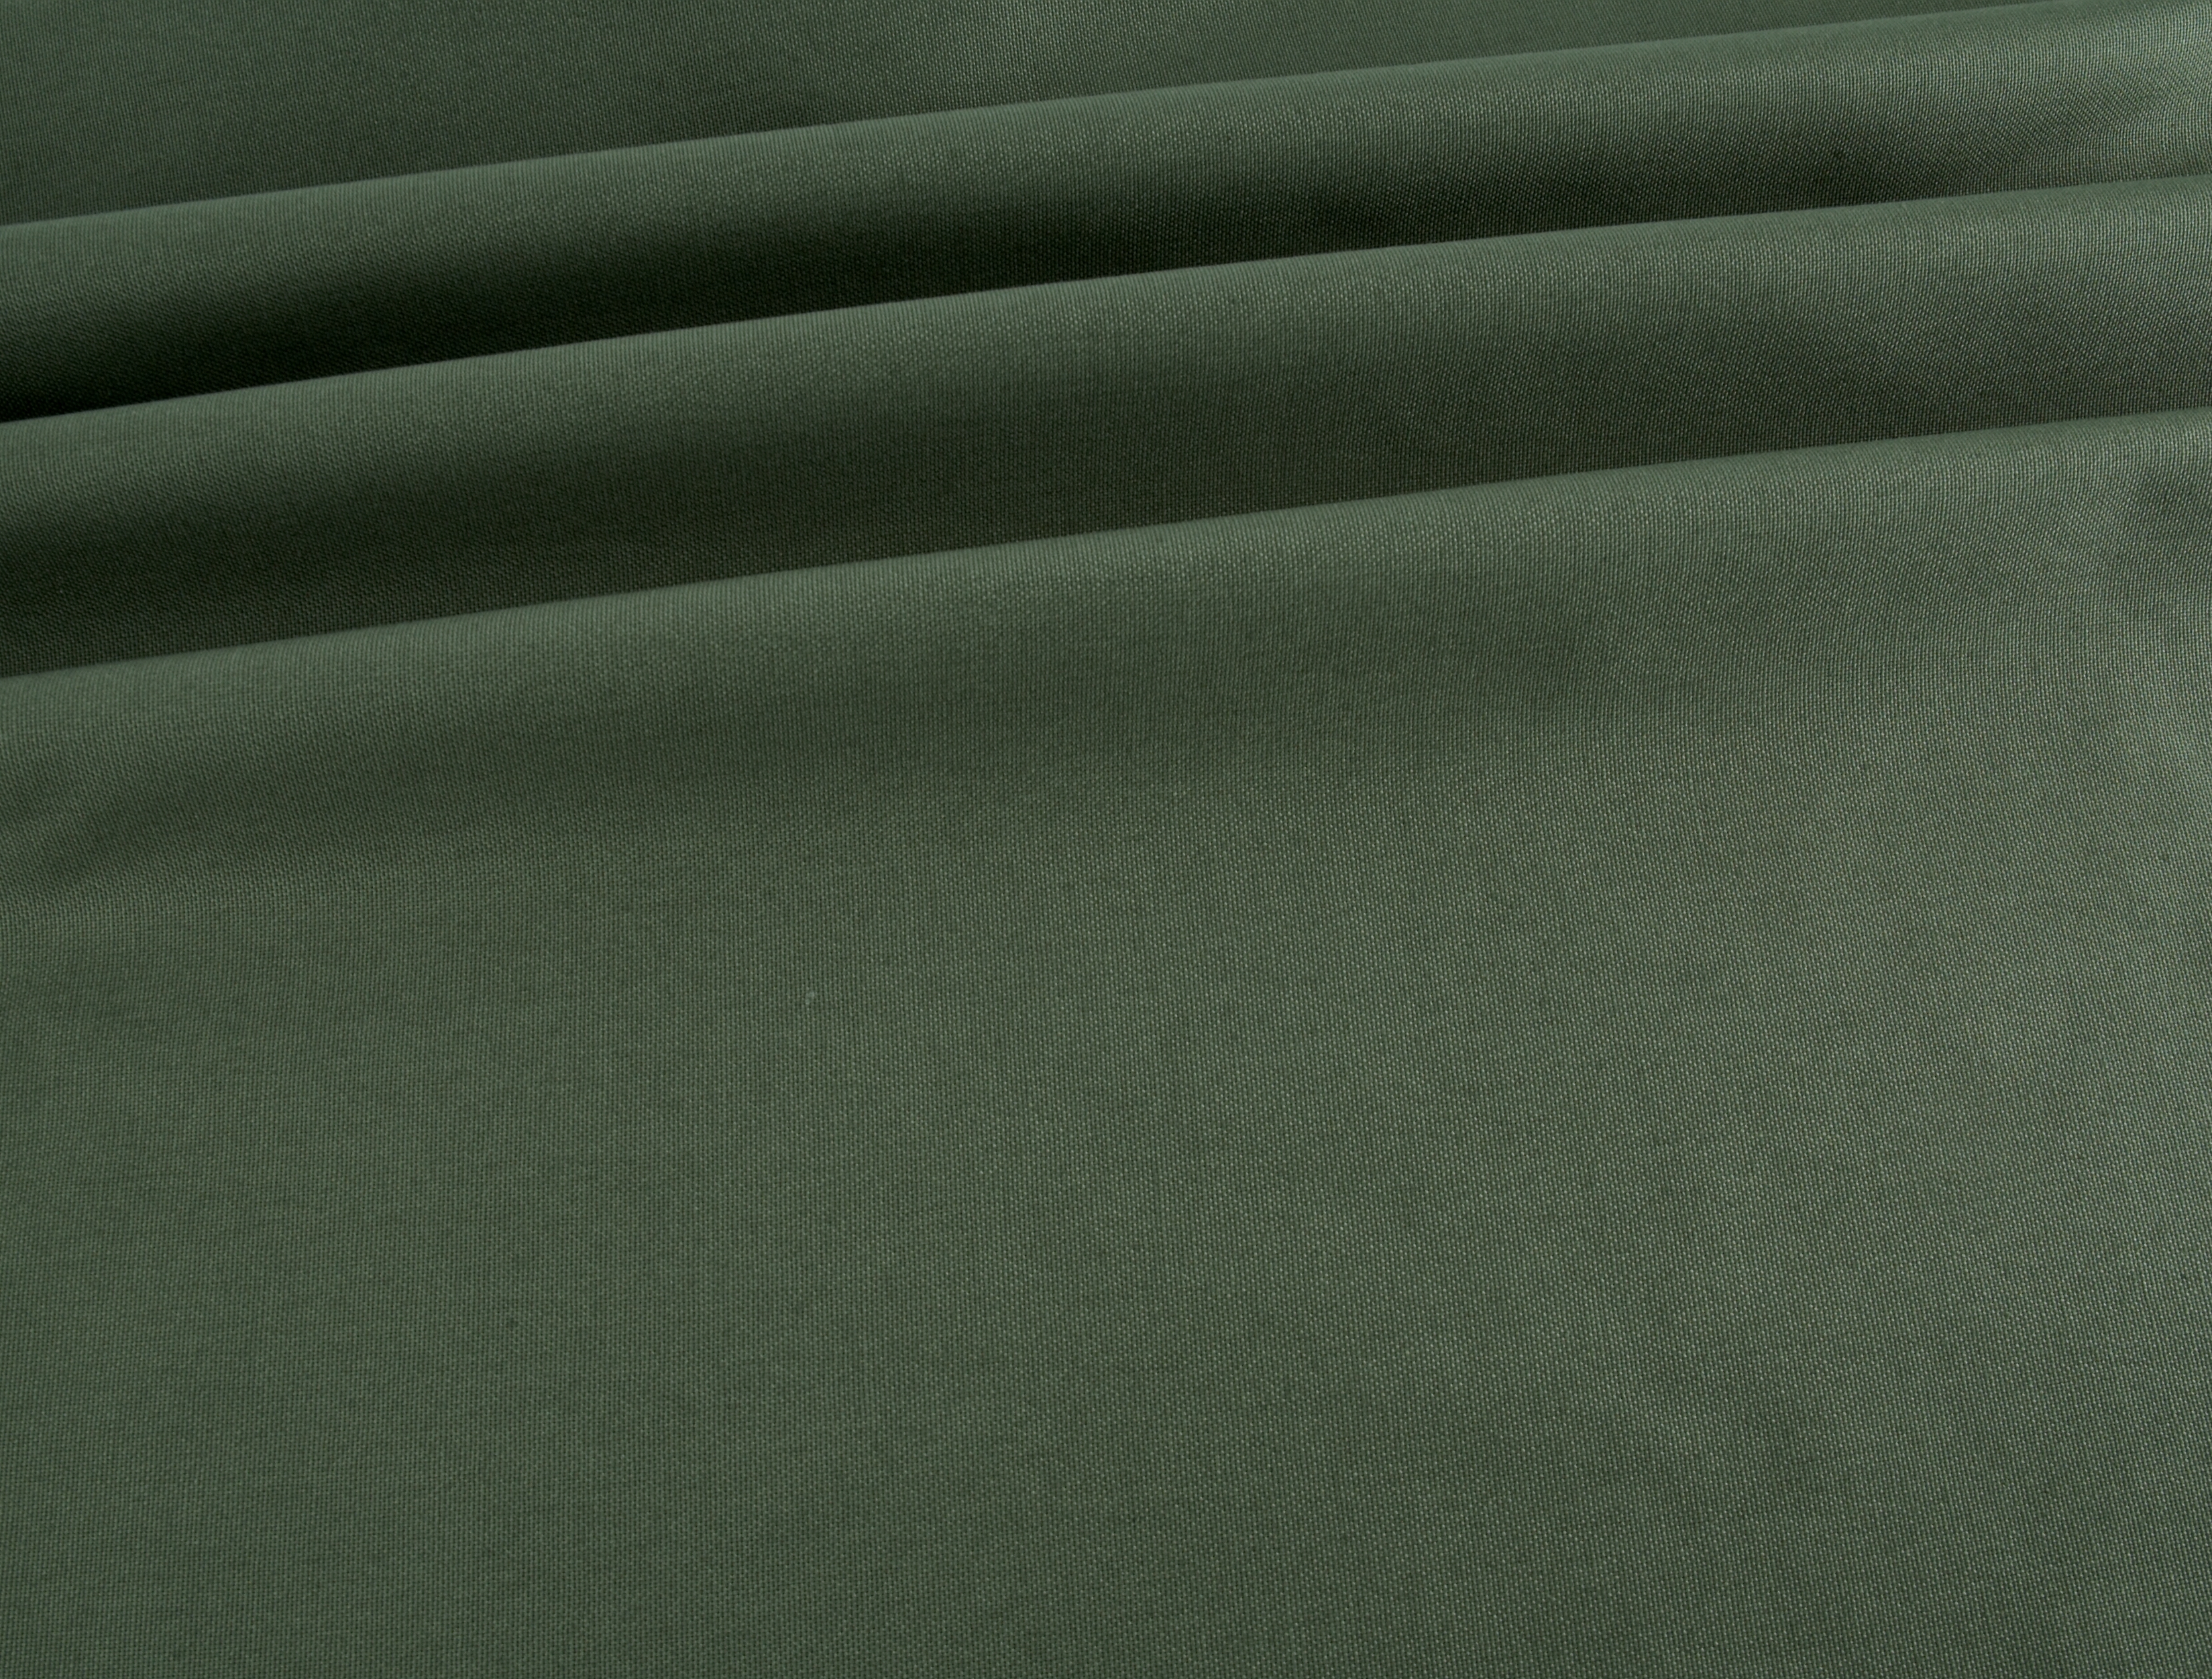 Plain Lightweight Cotton Canvas - Moss Green